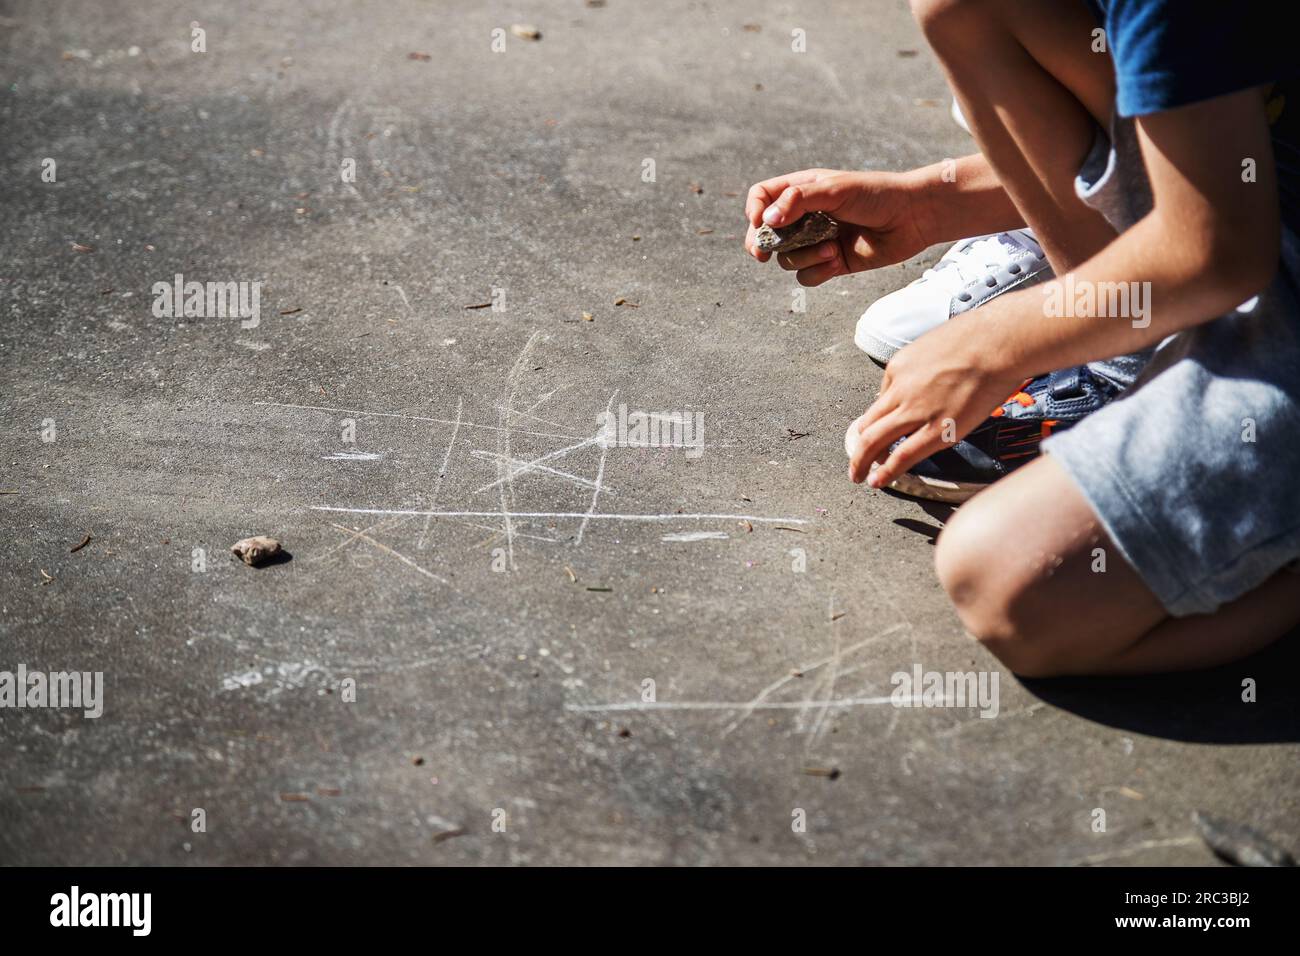 Enfance heureuse. Enfants caucasiens jouant dehors pendant la journée, grattant le sol avec une roche pour jouer le jeu classique de TIC-tac-toe. Banque D'Images